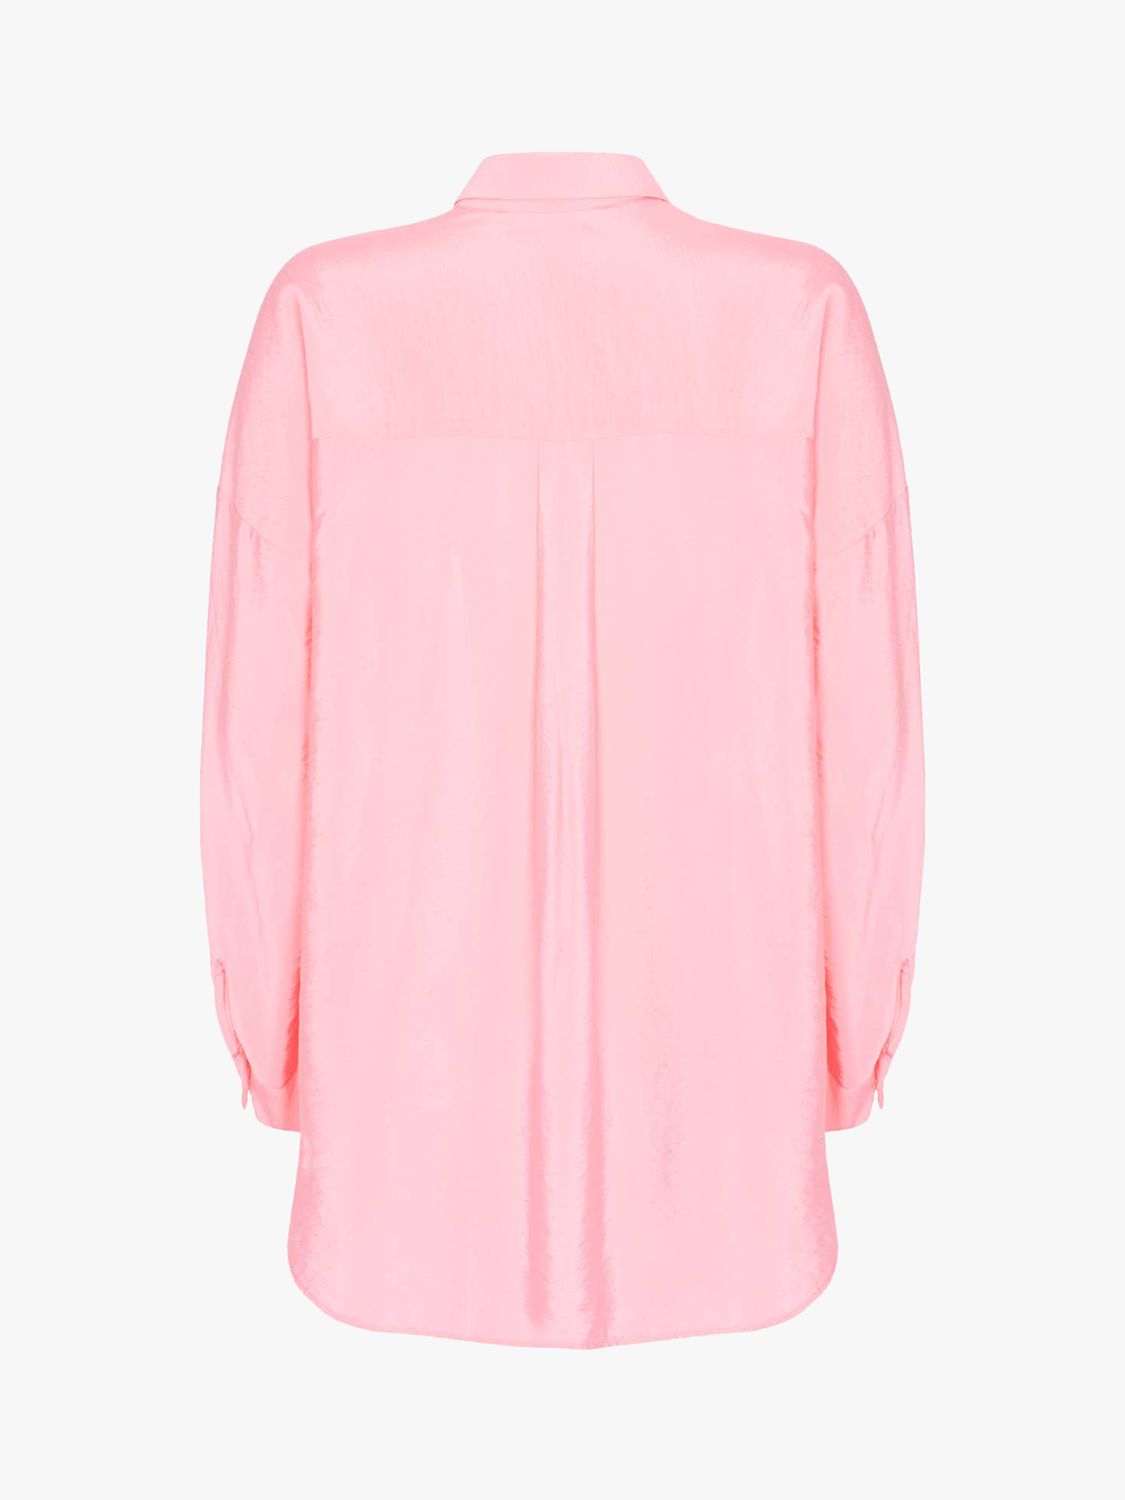 Mint Velvet Oversized Shirt, Pink at John Lewis & Partners